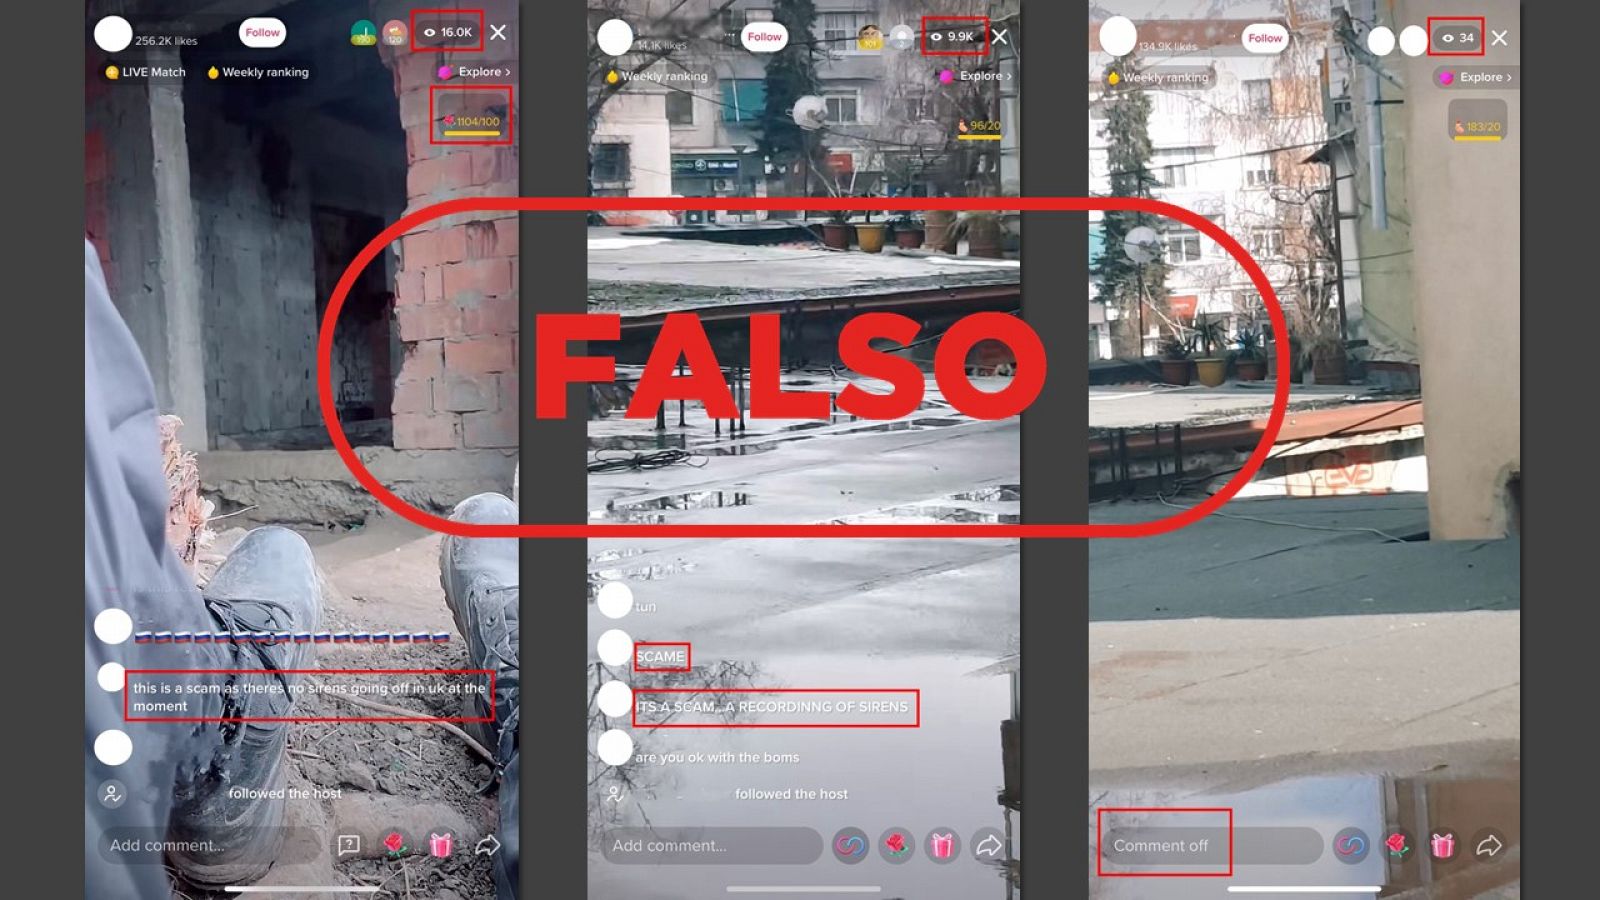 Captura de los tres directos de TikTok falsos encontrados y analizados con el sello falso